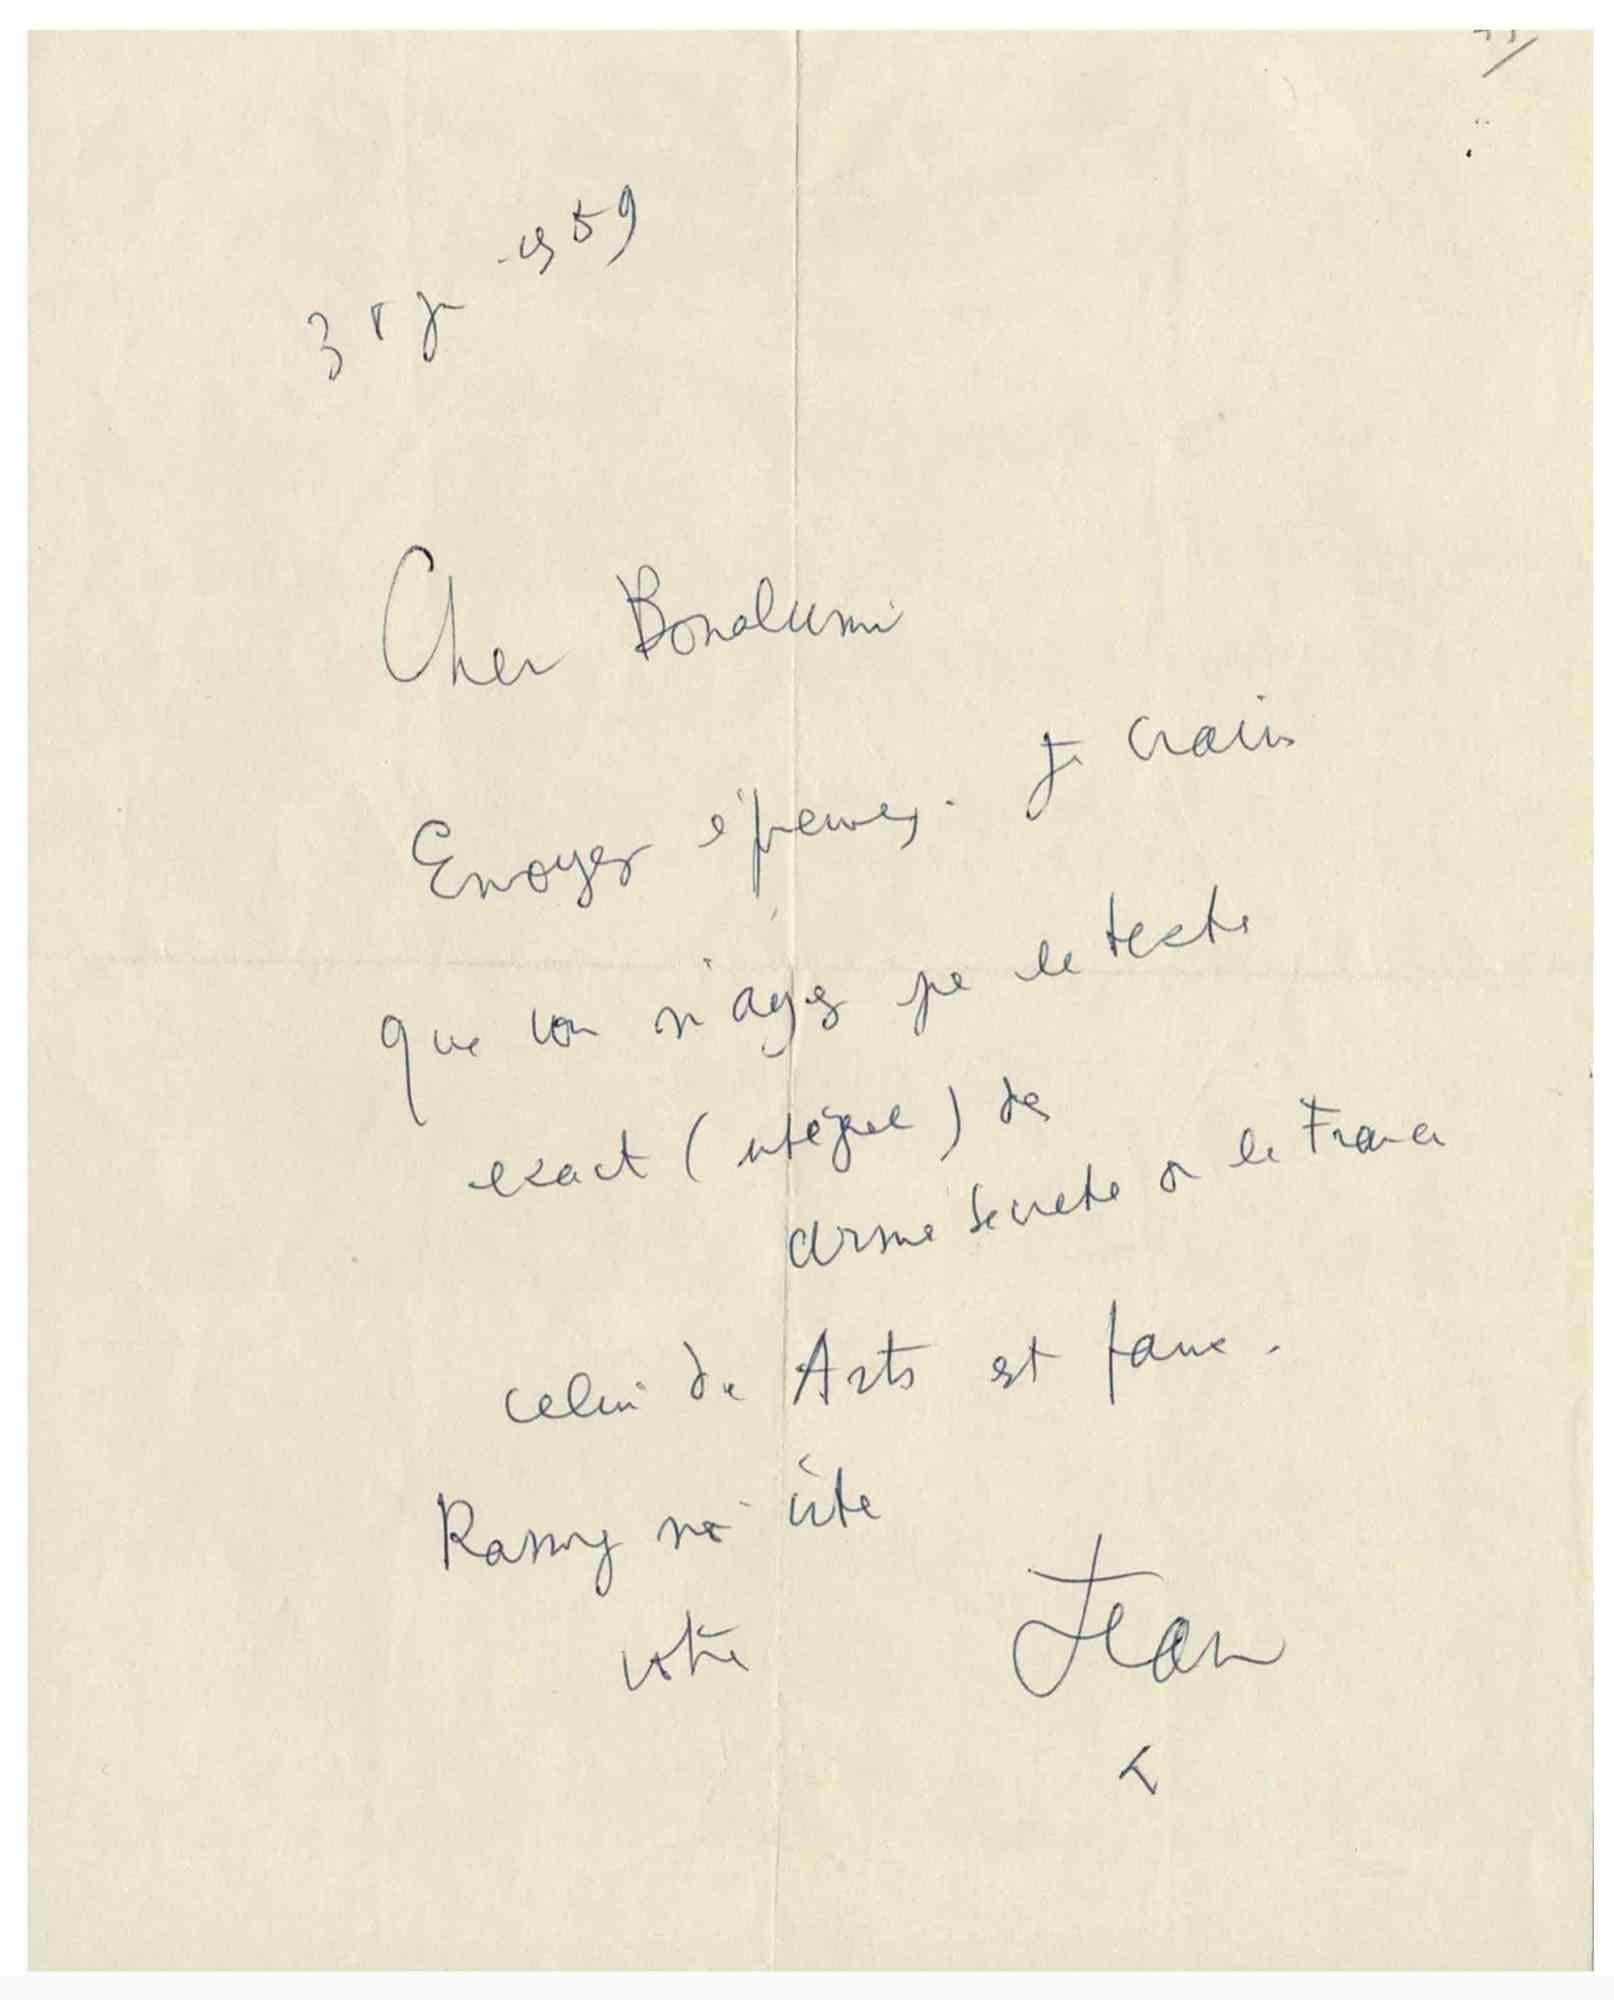 Jean Cocteau Autograph Letter - 1959 - Art by Unknown